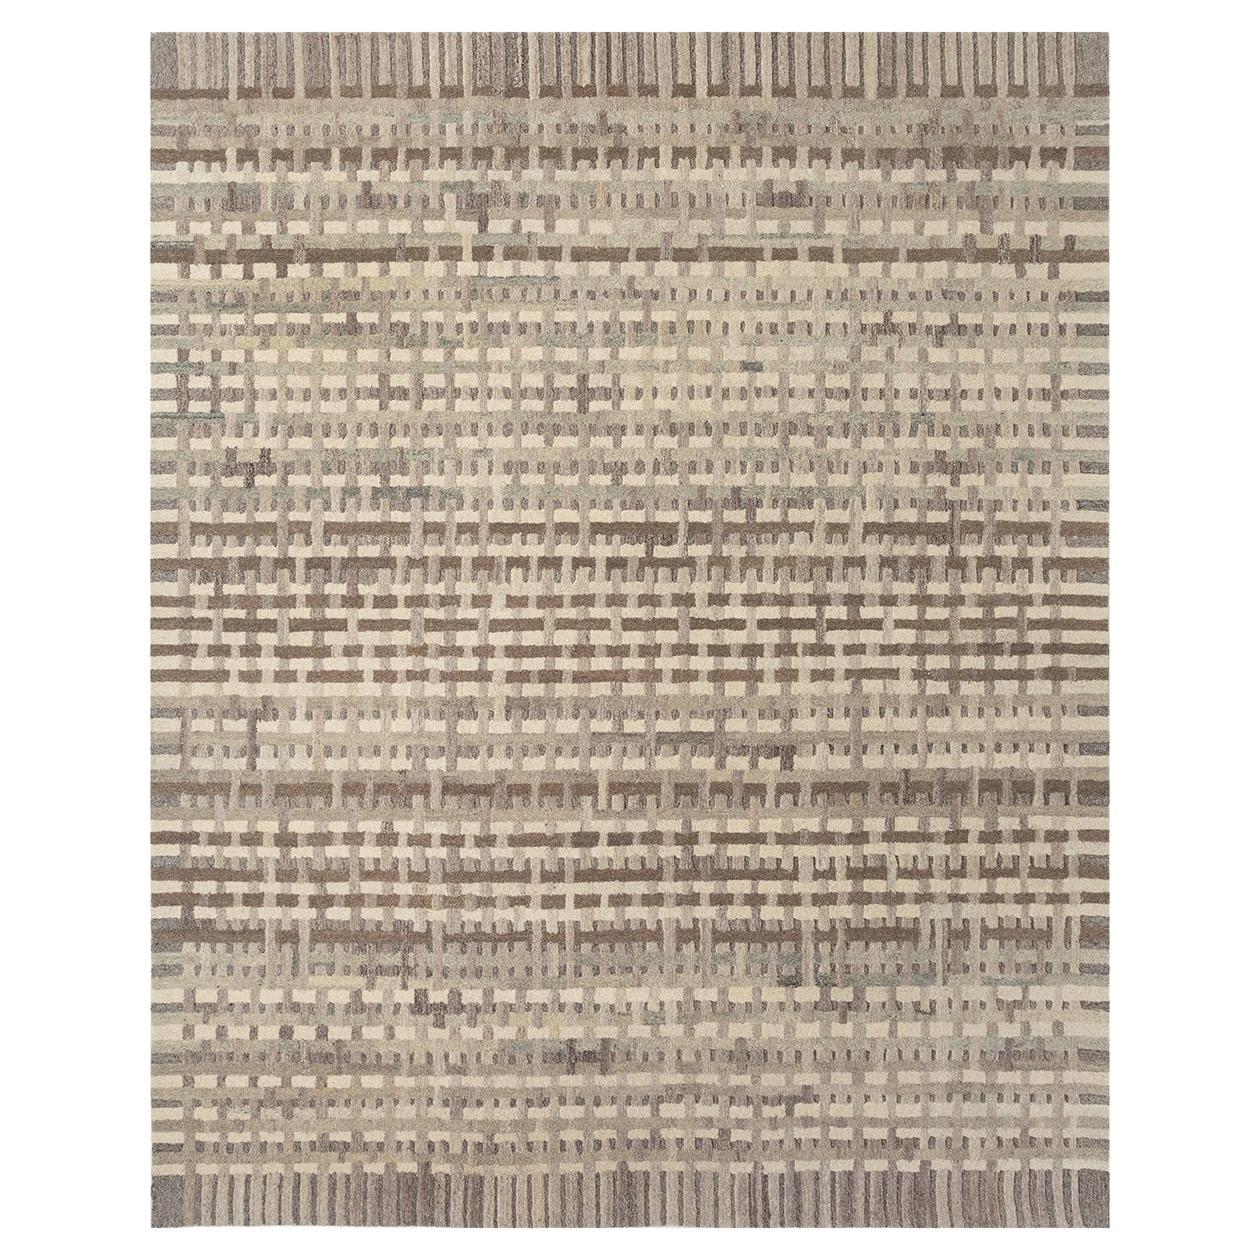 Tapis verrouillé de tisserands rurals, touffeté, laine, 240 x 300 cm